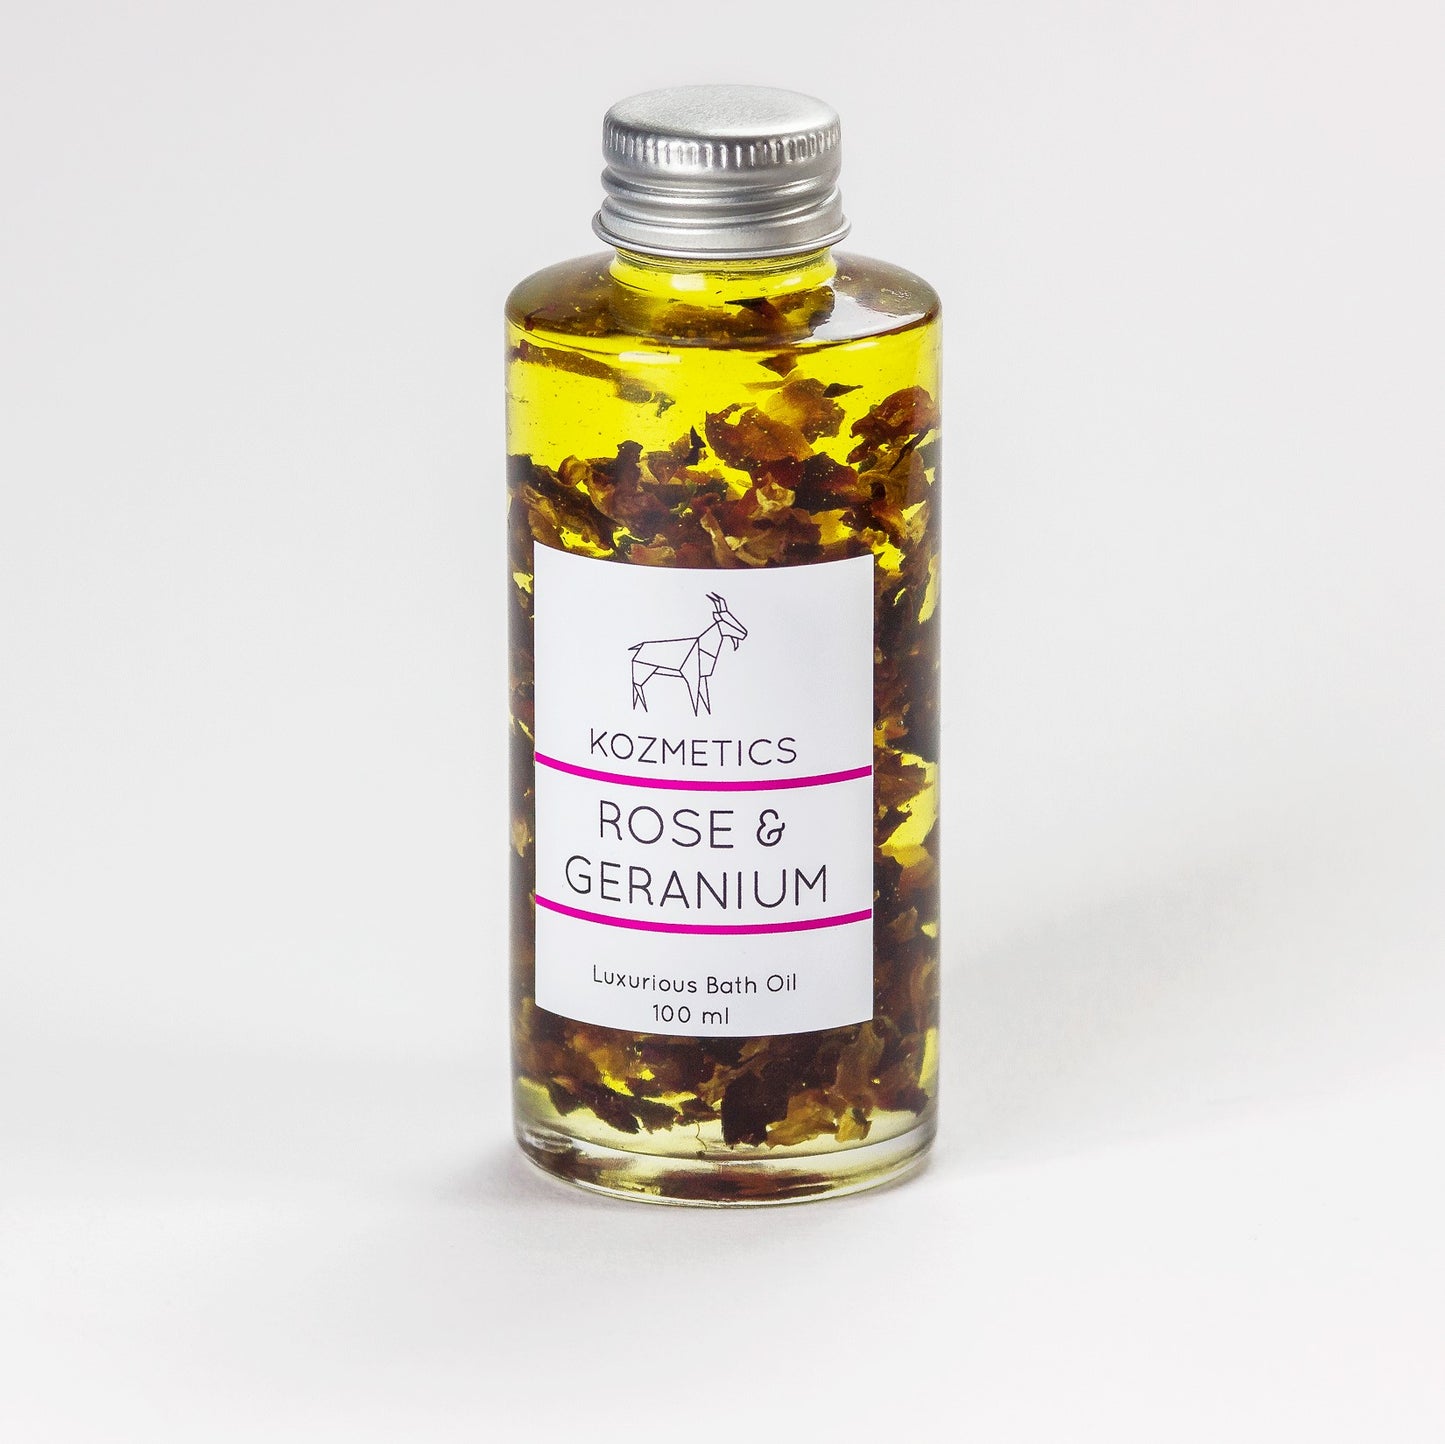 Rose & Geranium Bath Oil